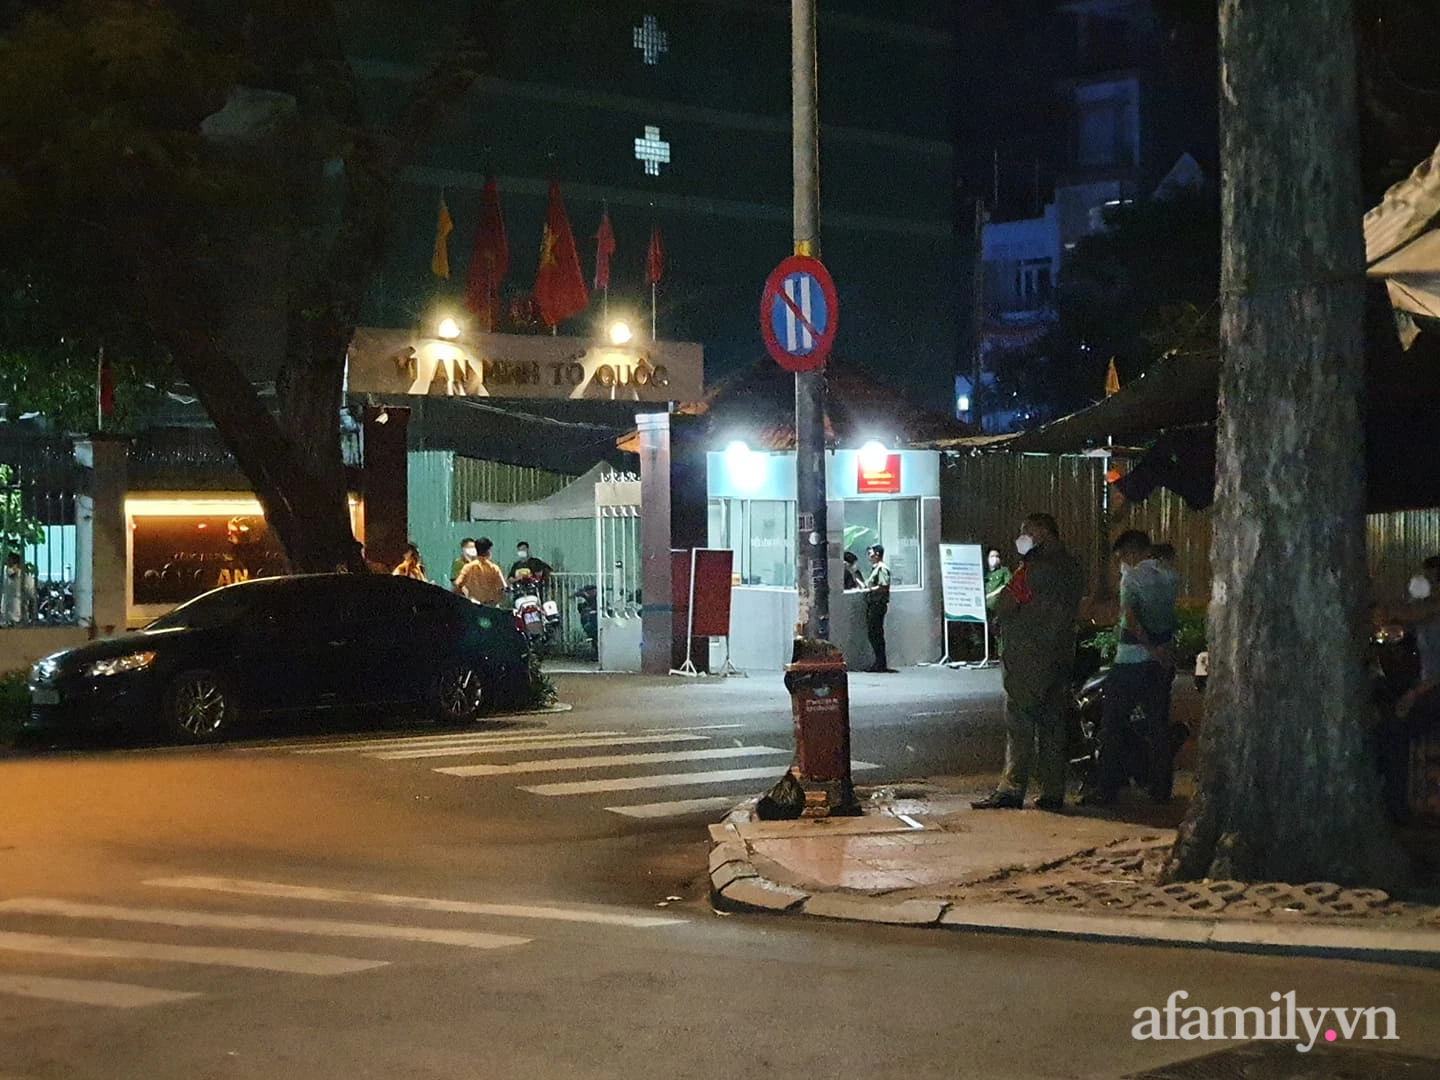 NGAY LÚC NÀY: Hàng trăm người nườm nượp kéo đến quanh biệt thự nhà bà Nguyễn Phương Hằng, cảnh sát lập rào chặn phố Nguyễn Thông - Ảnh 5.